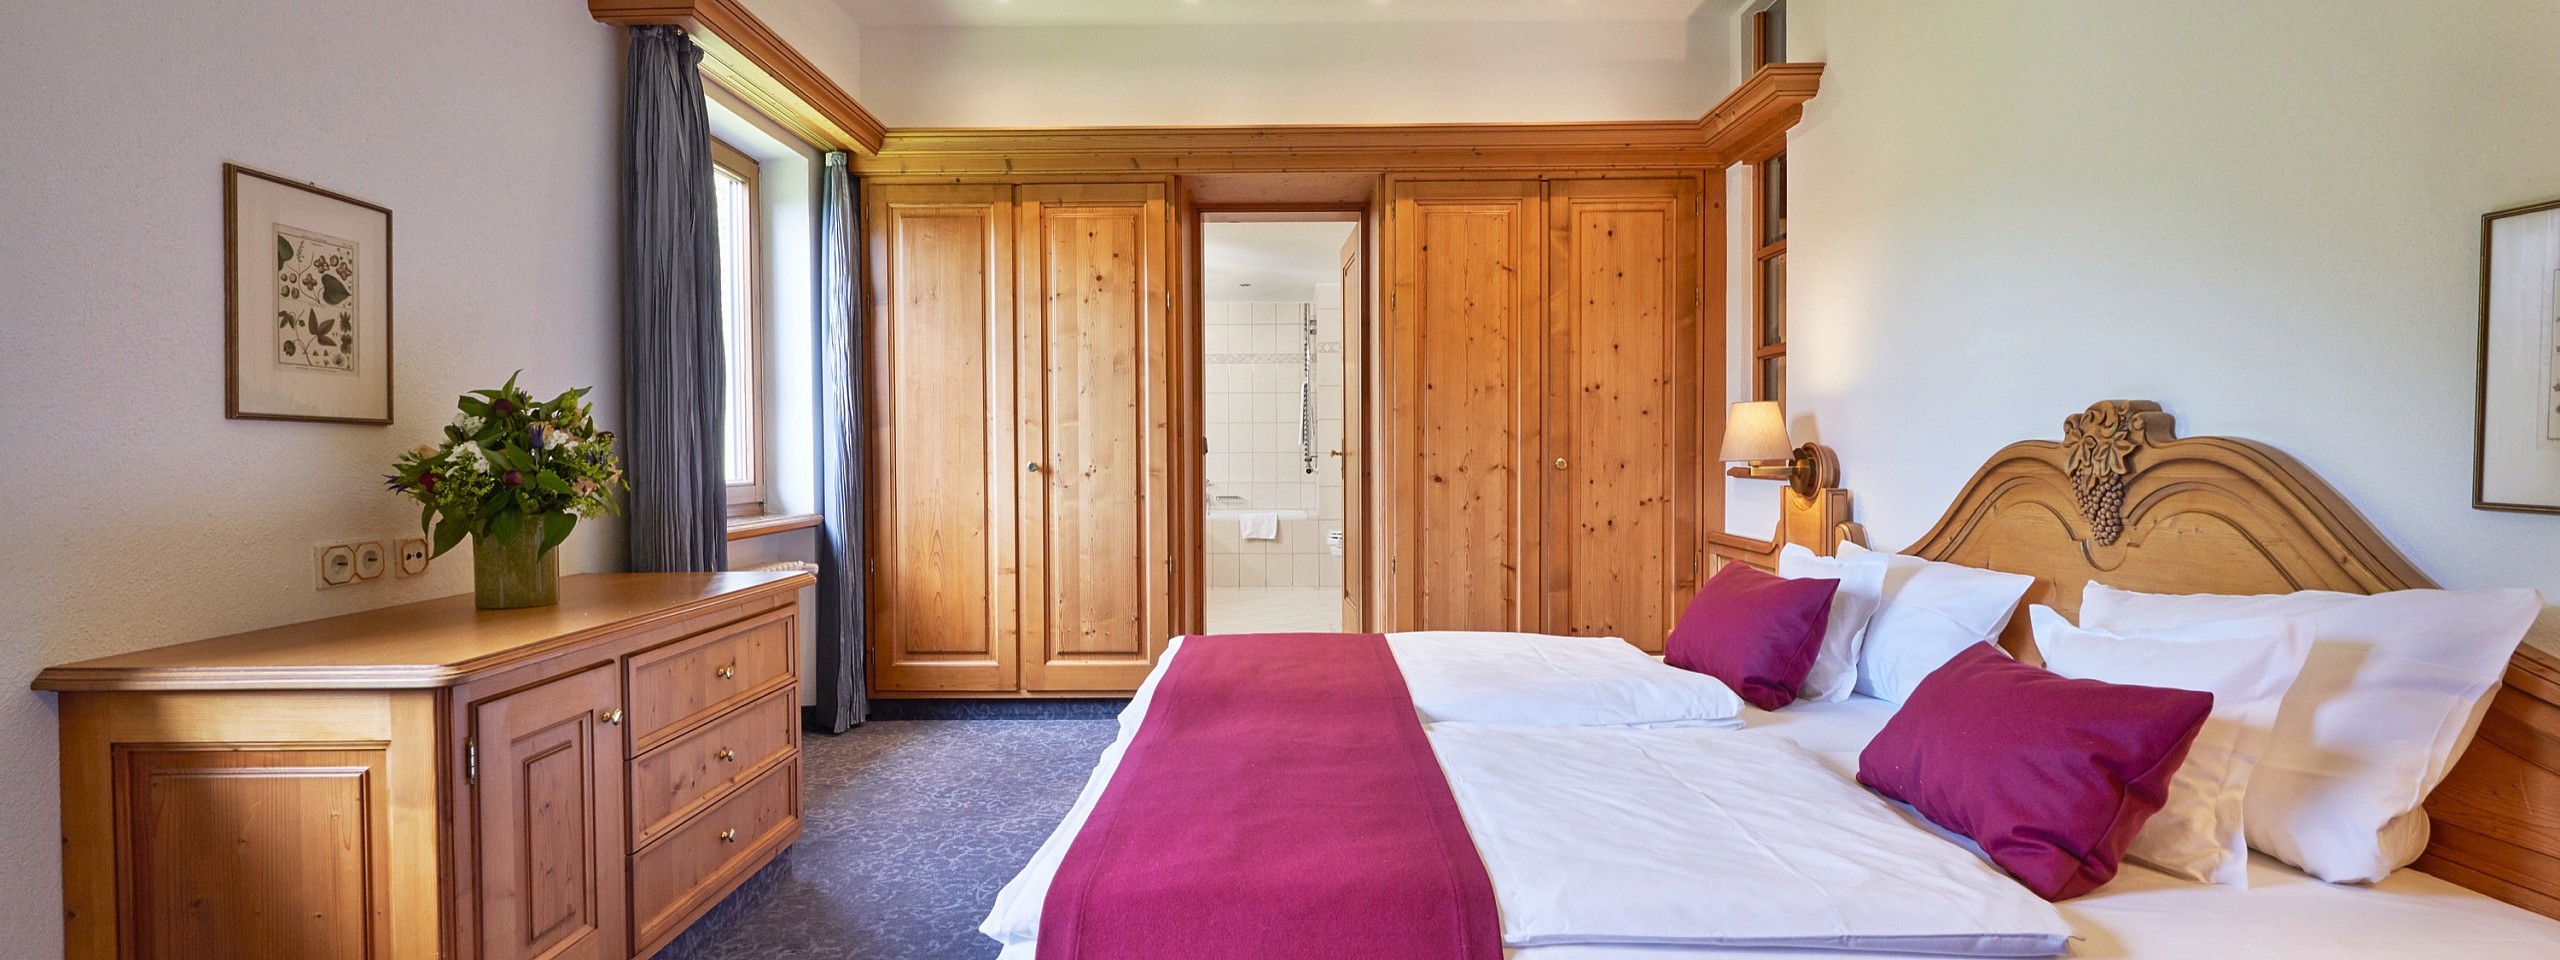 Doppelbett mit einer großen Kommode am Fußende und Blick ins Badezimmer im Hotelzimmer im Schwarzwald.